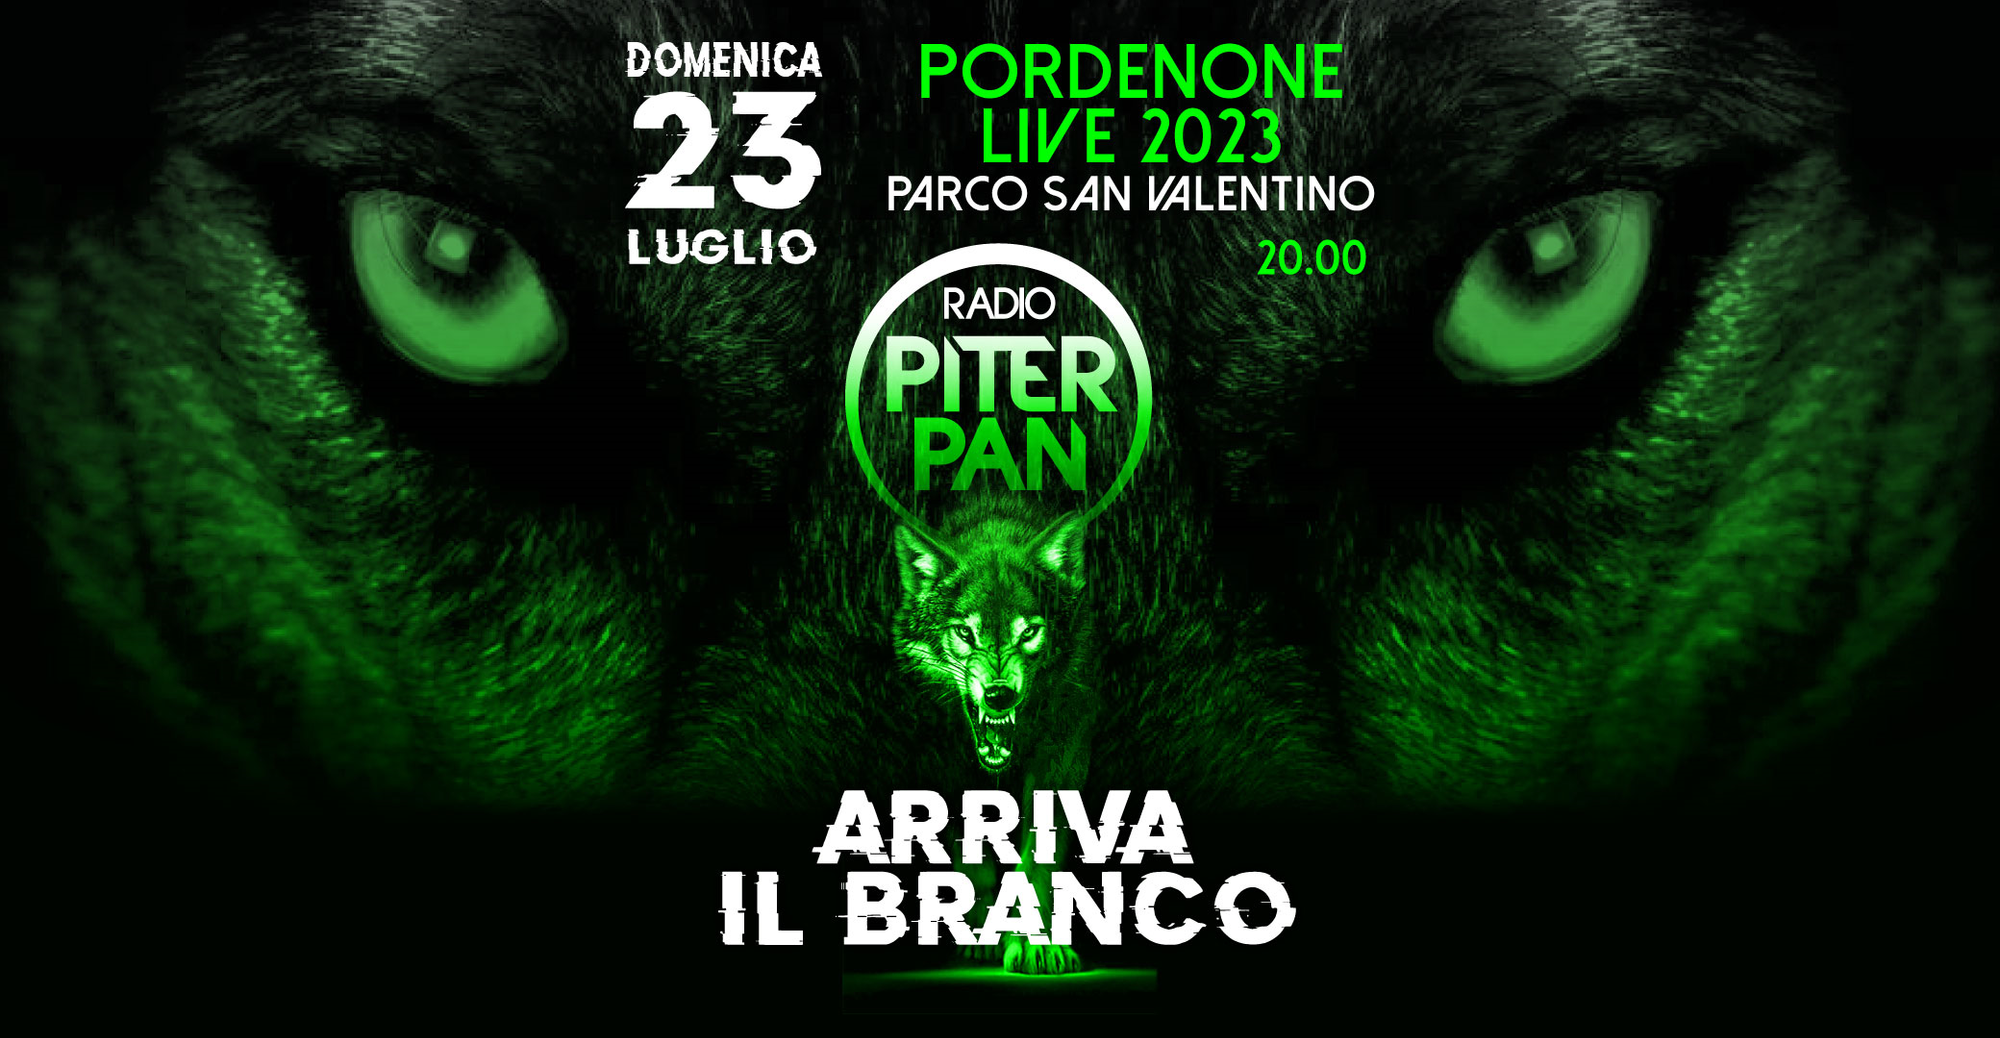 Radio Piterpan presenta "IL BRANCO", l'evento live a Pordenone il 23 luglio